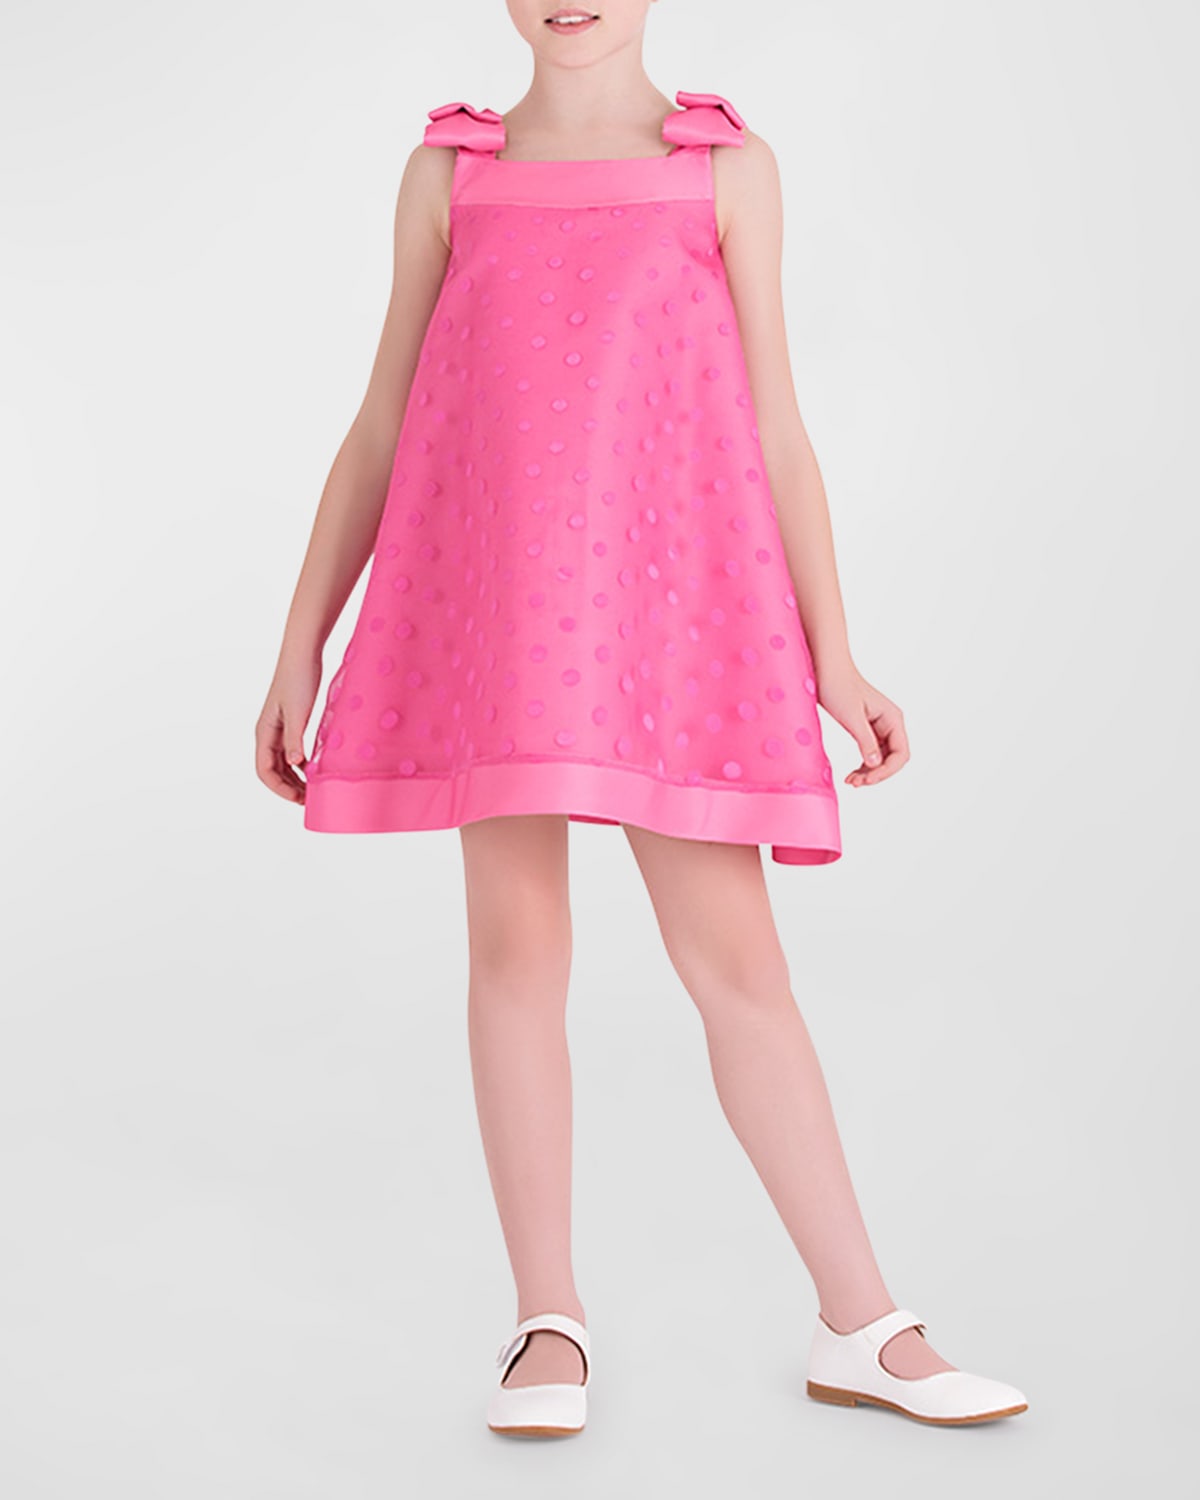 Mama Luma Kids' Girl's Polka Dot Bow Dress In Pink